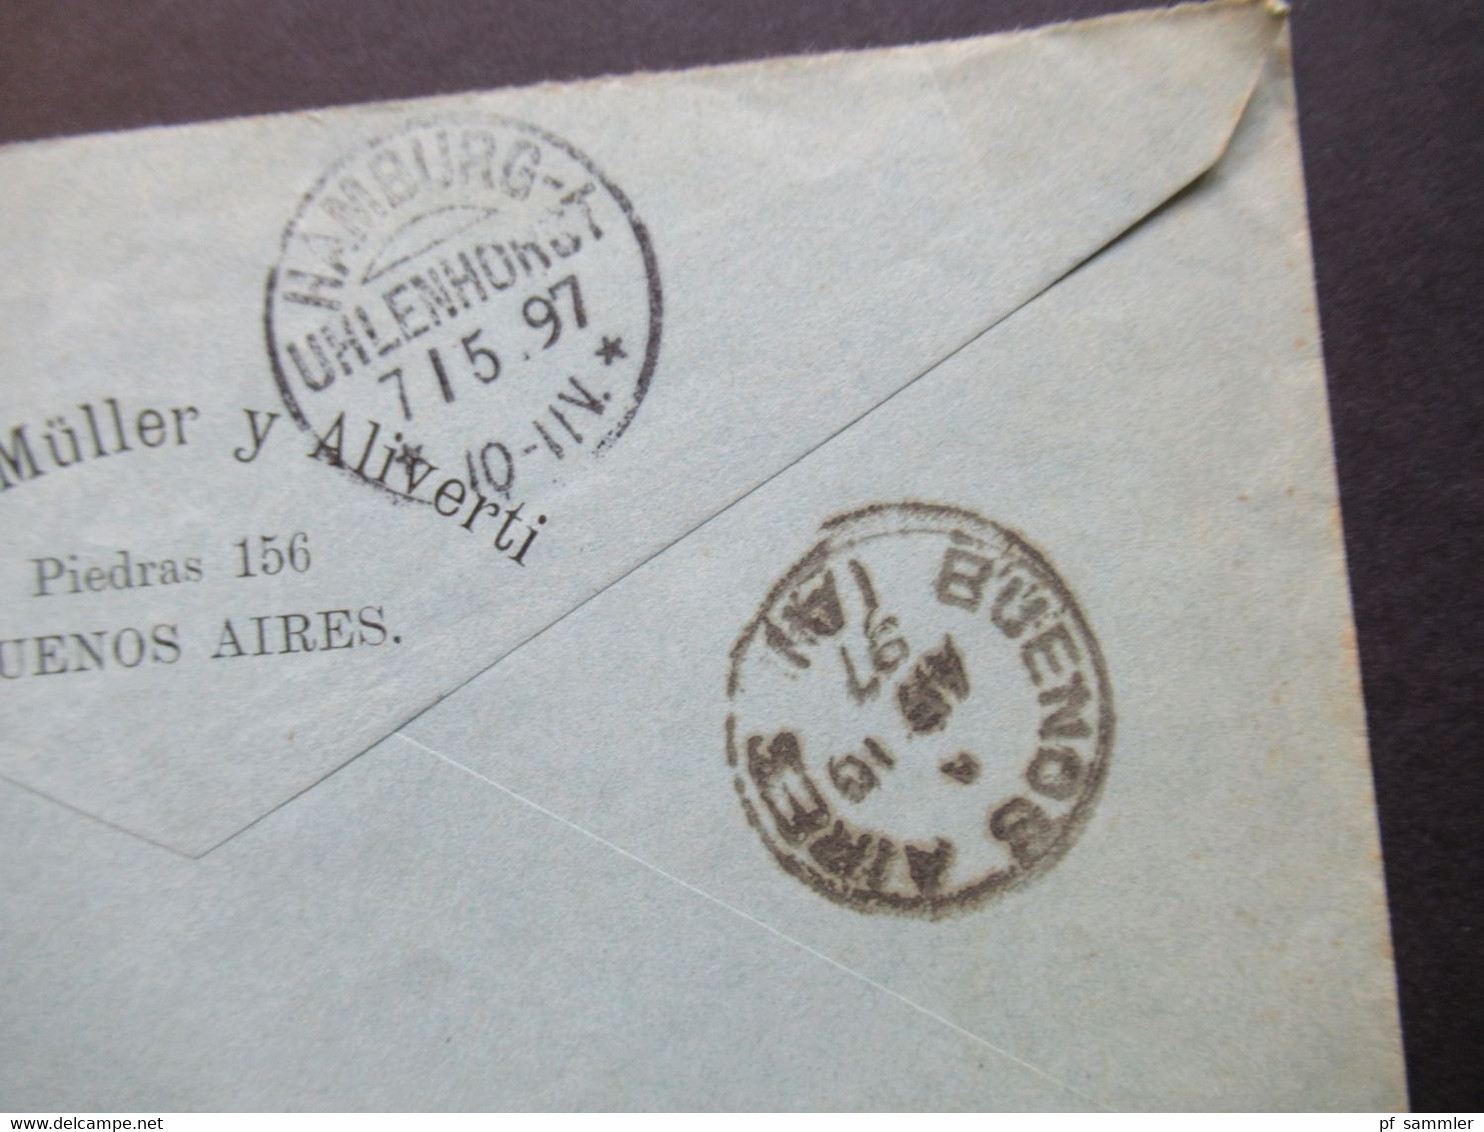 Argentinien 1897 Por Vapor Nile Nach HH Mit KOS Hamburg Uhlenhorst Umschlag Adolfo Müller Y Aliverti Buenos Aires - Briefe U. Dokumente